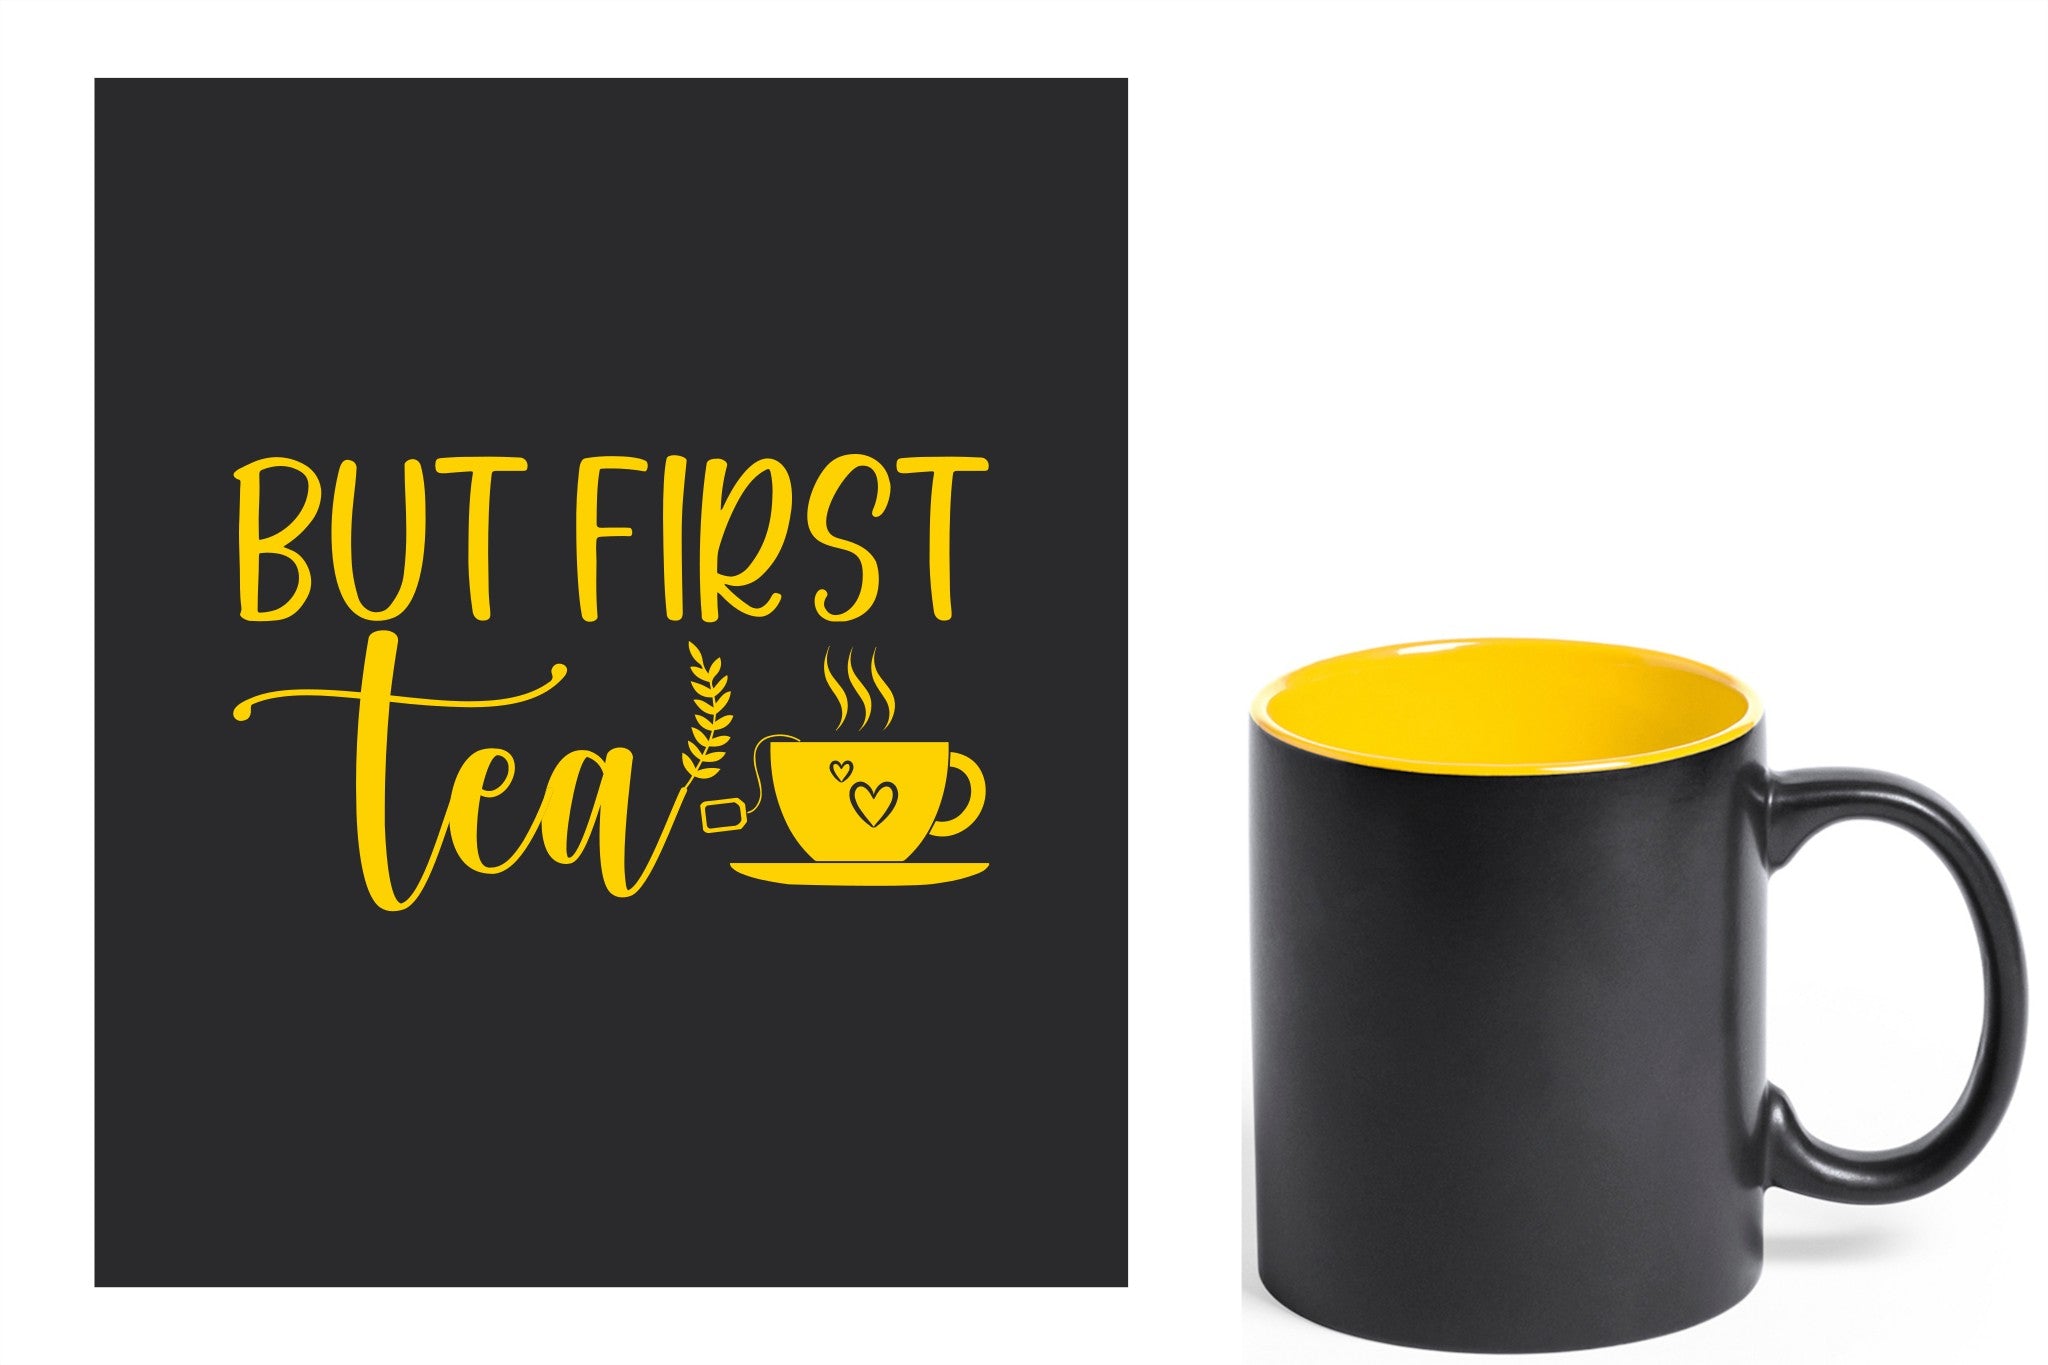 zwarte keramische mok met gele gravure  'But first tea'.